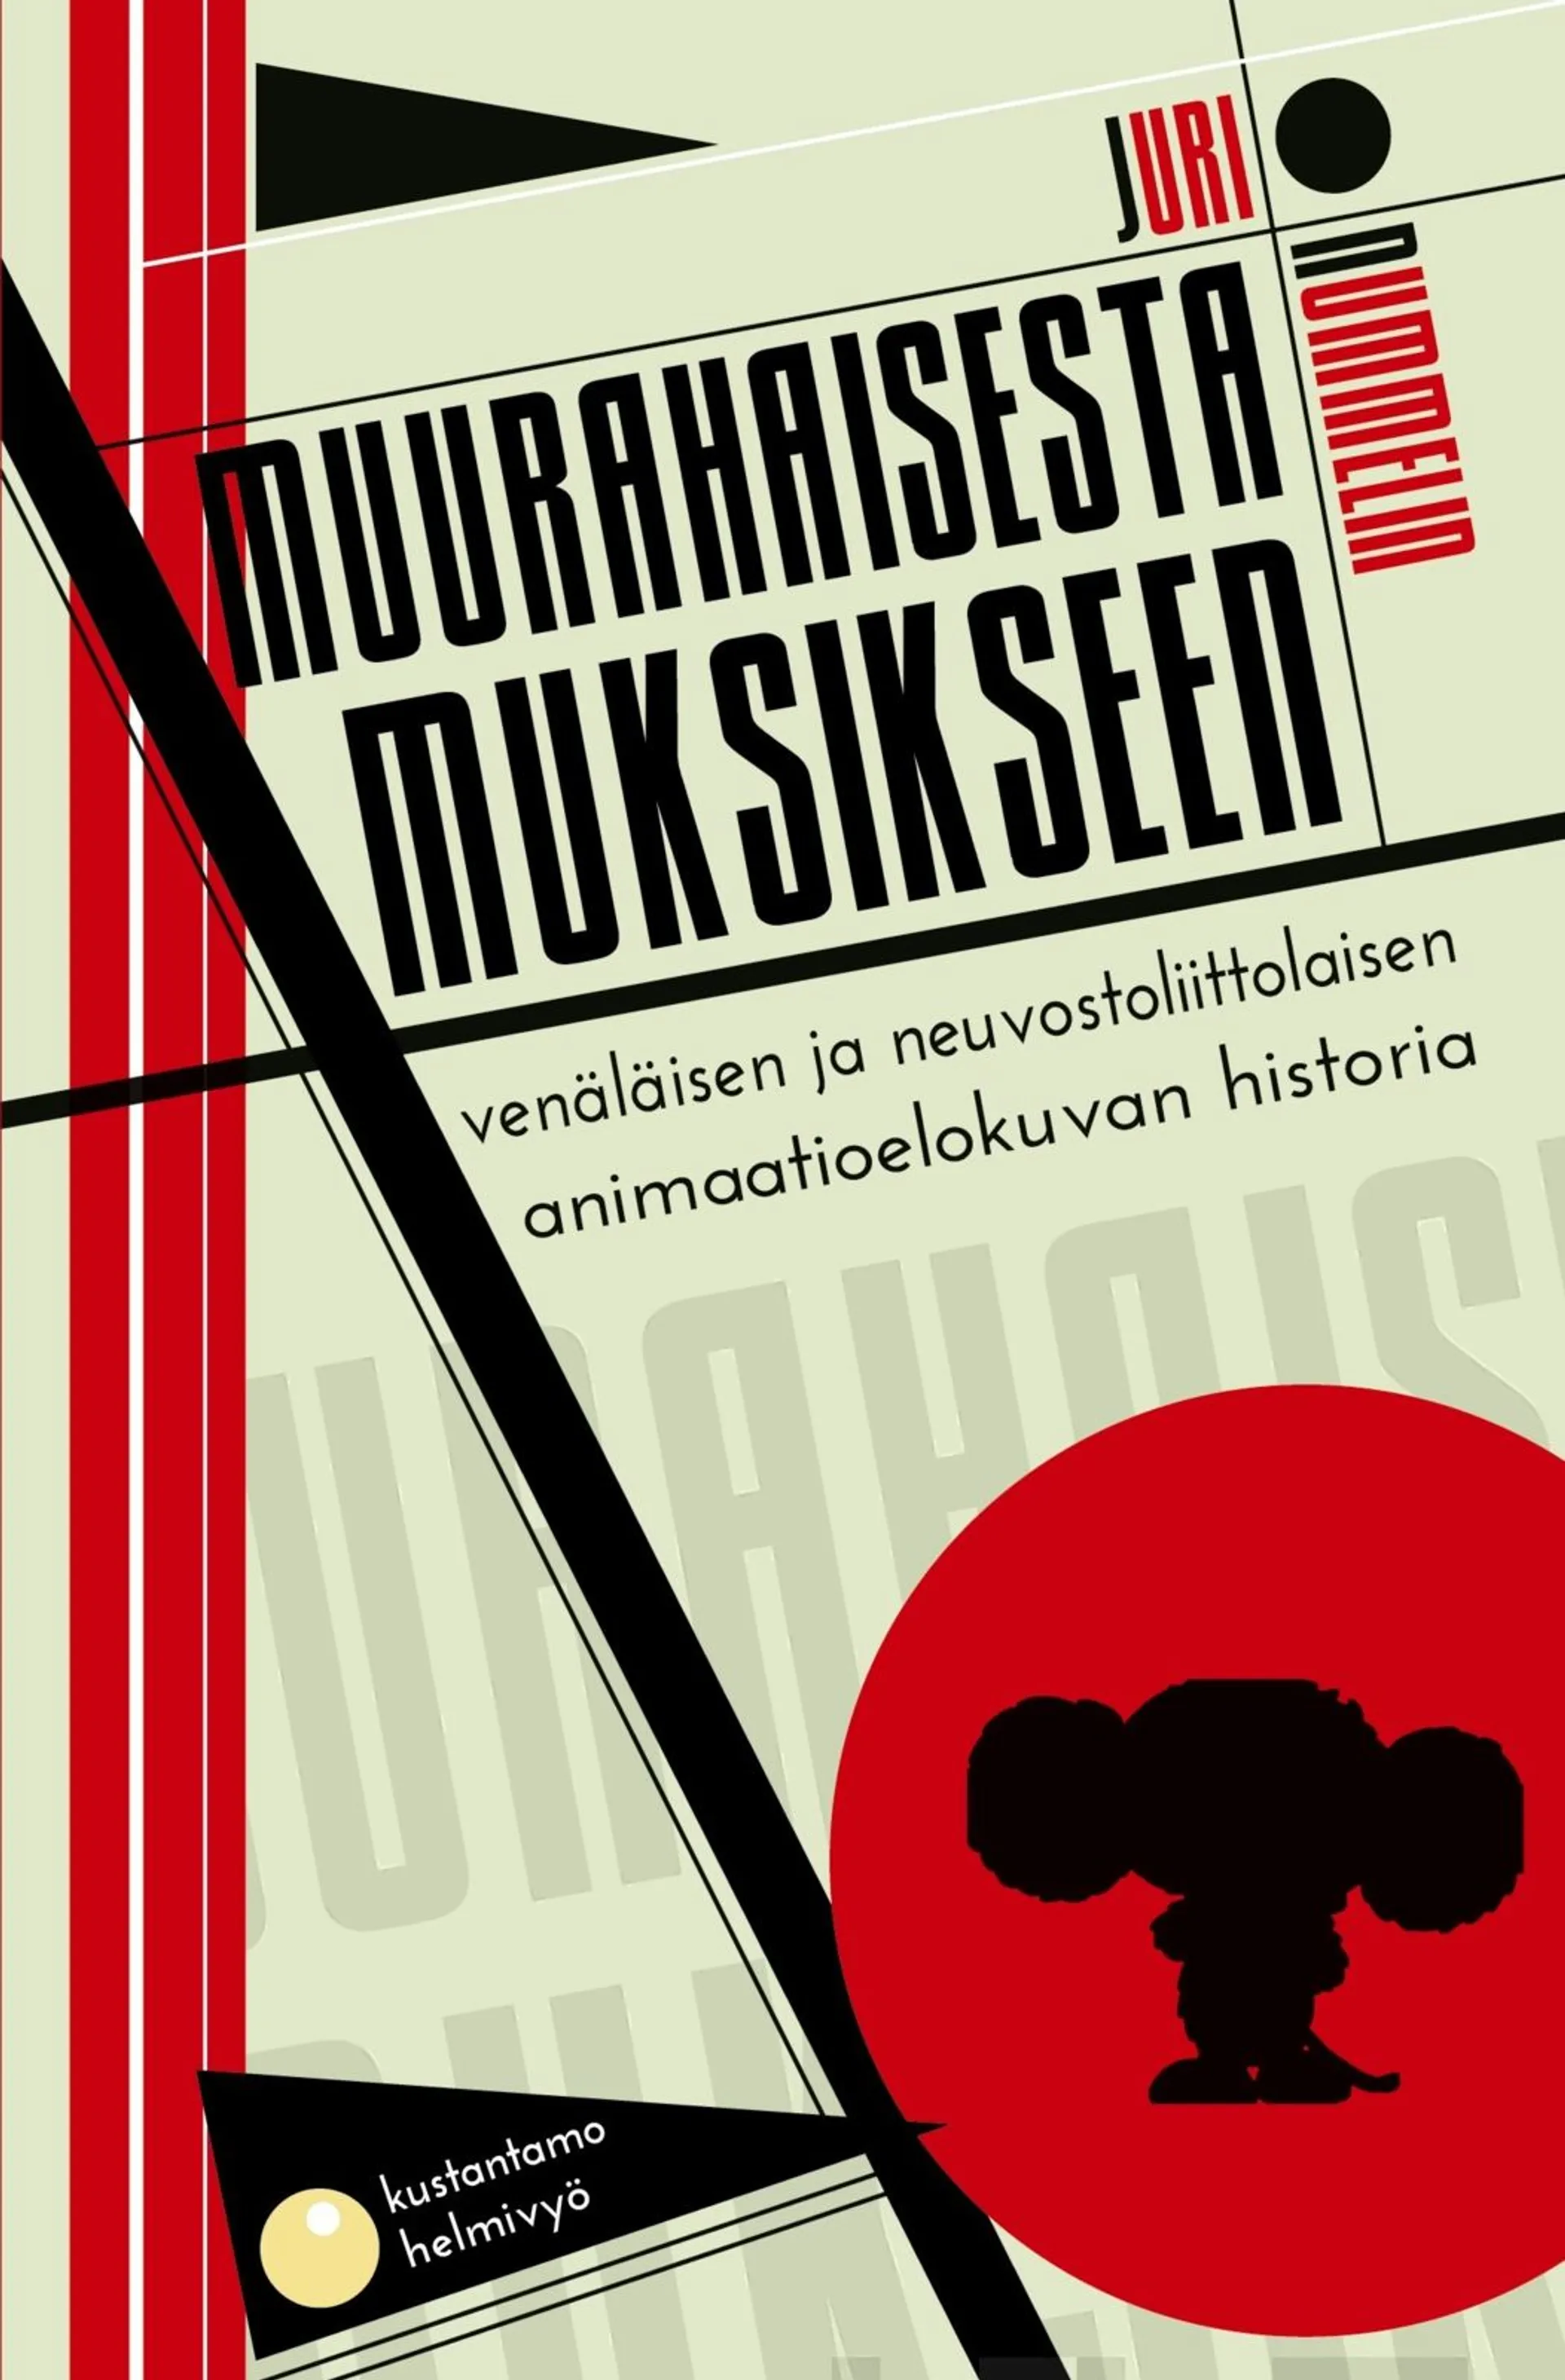 Nummelin, Muurahaisesta Muksikseen - Venäläisen ja neuvostoliittolaisen animaatioelokuvan historia